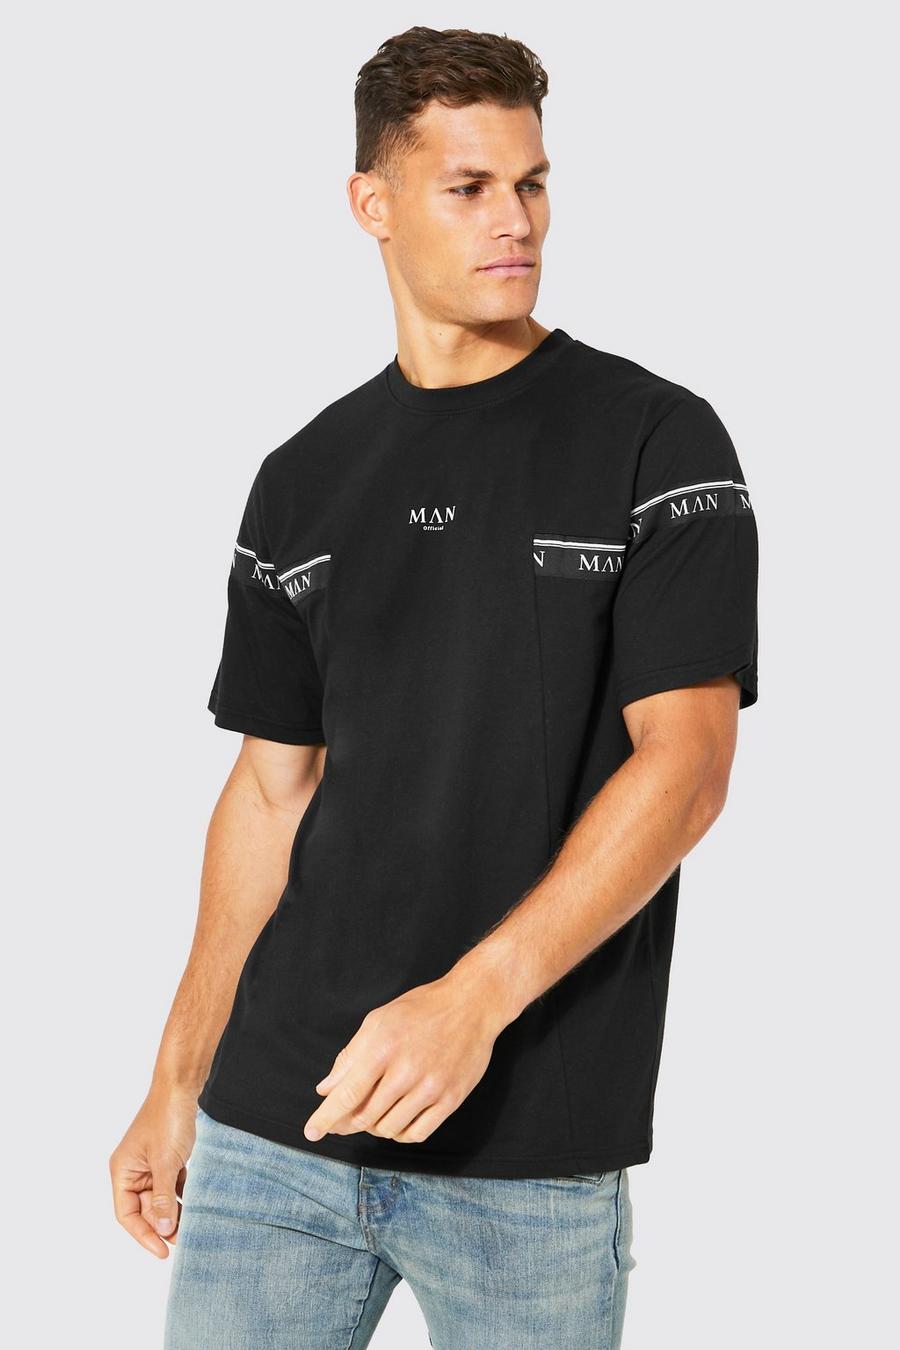 T-shirt Tall Man con caratteri romani e striscia, Black nero